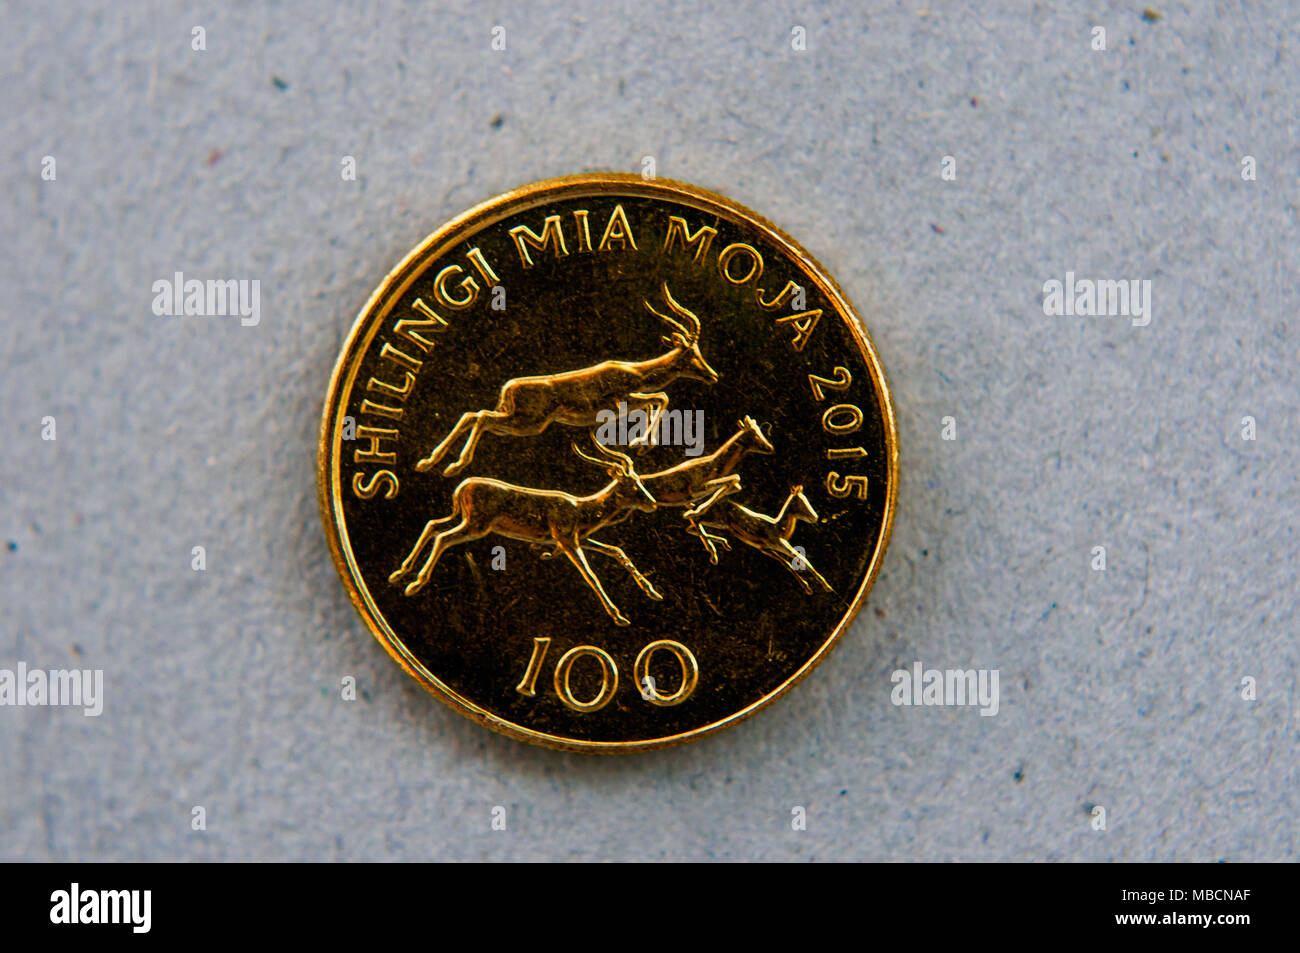 100 Tanzanie shilling shilling coin, dépeignant les impalas bondissant, en semi studio, Dar es Salaam, Tanzanie Banque D'Images